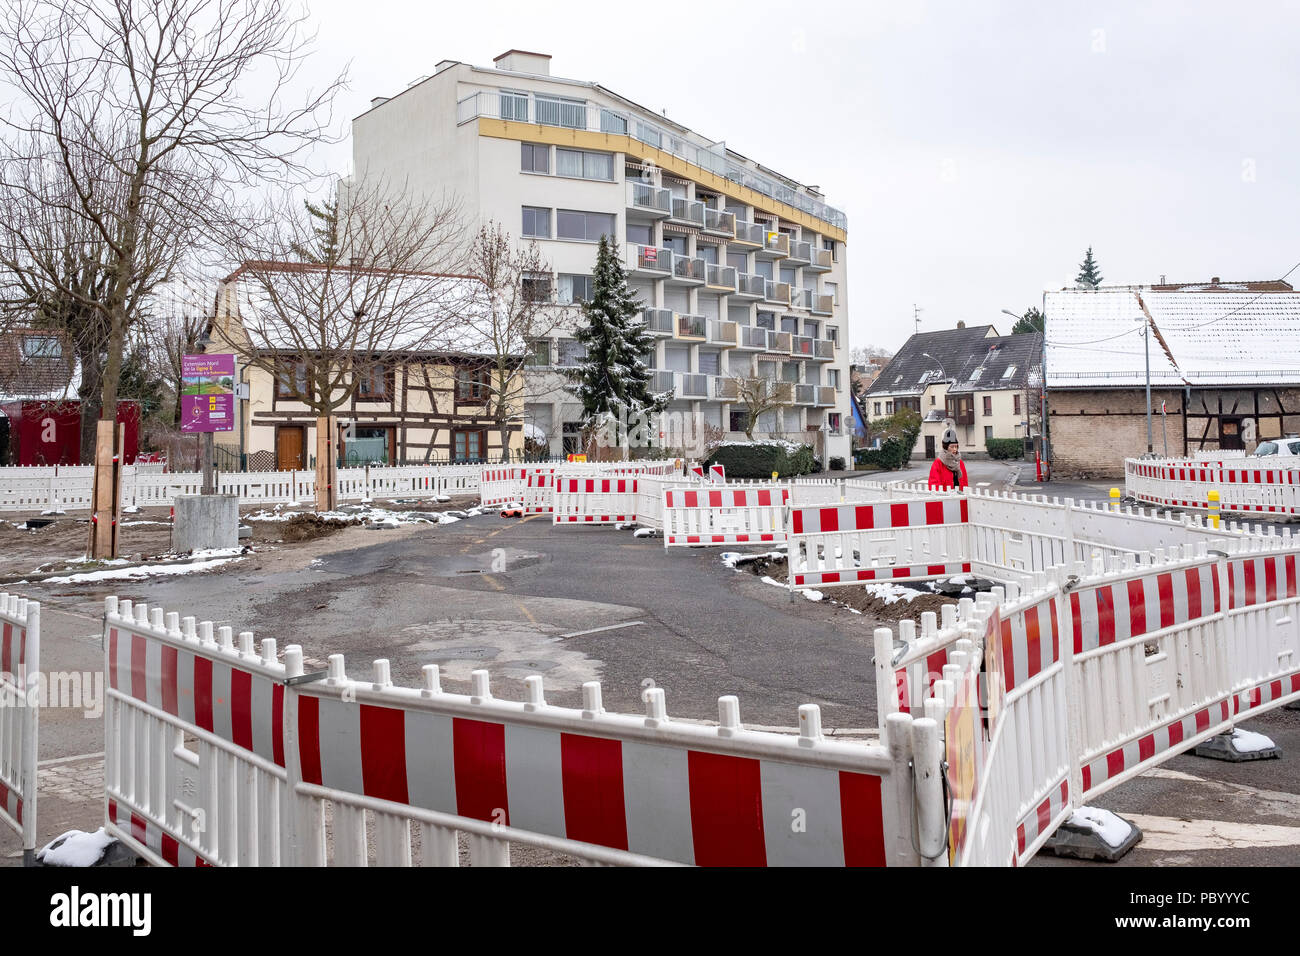 Strasburgo, tram preliminare sito in costruzione, linea e estensione, sicurezza barriere in plastica, case, Alsazia, Francia, Europa Foto Stock